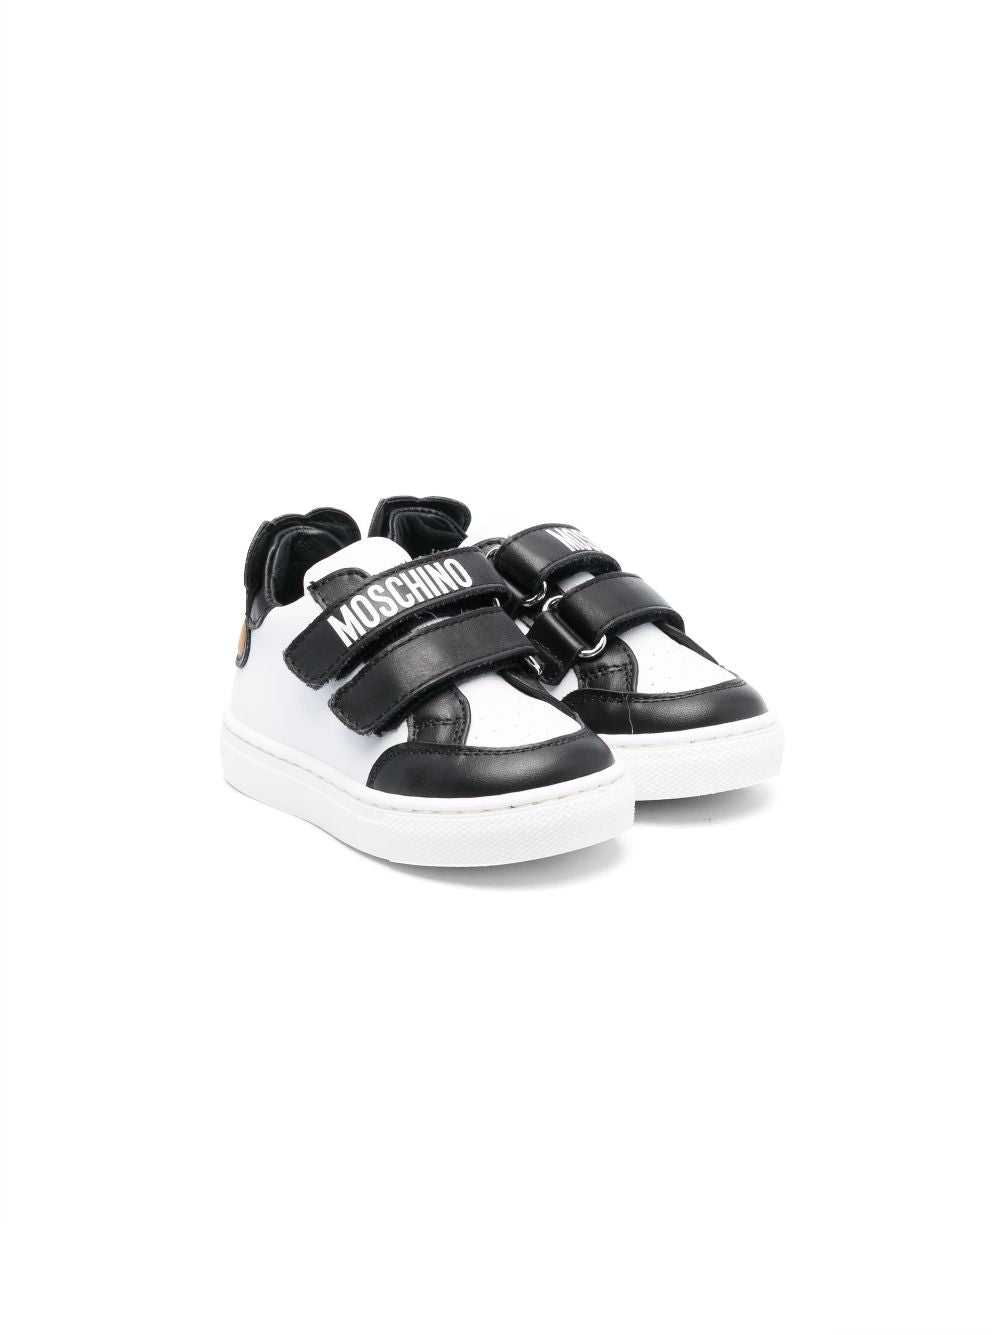 Sneakers bianche e nero per bambini con logo